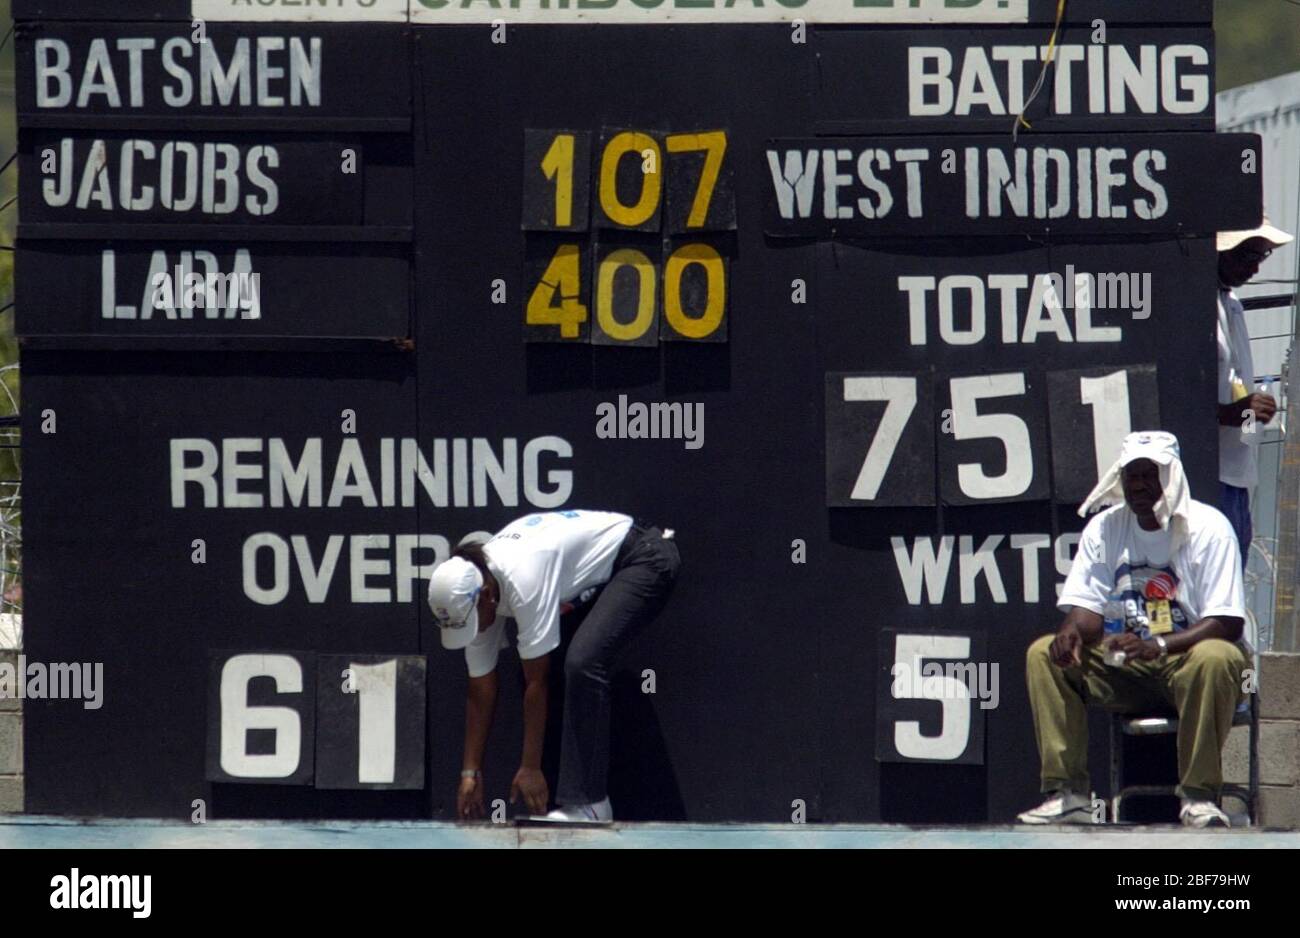 Embargot until 06:00 - 18 Apr 2020 Archivfoto vom 12-04-2004 der letzten Anzeigetafel, die den Rekord des westindischen Kapitäns Brian Lara von 400 Runs Not out zeigt und am 751 gegen England erklärt, während des dritten Tages des 4. Tests auf dem Erholungsgebiet, St. John's Antigua. Stockfoto